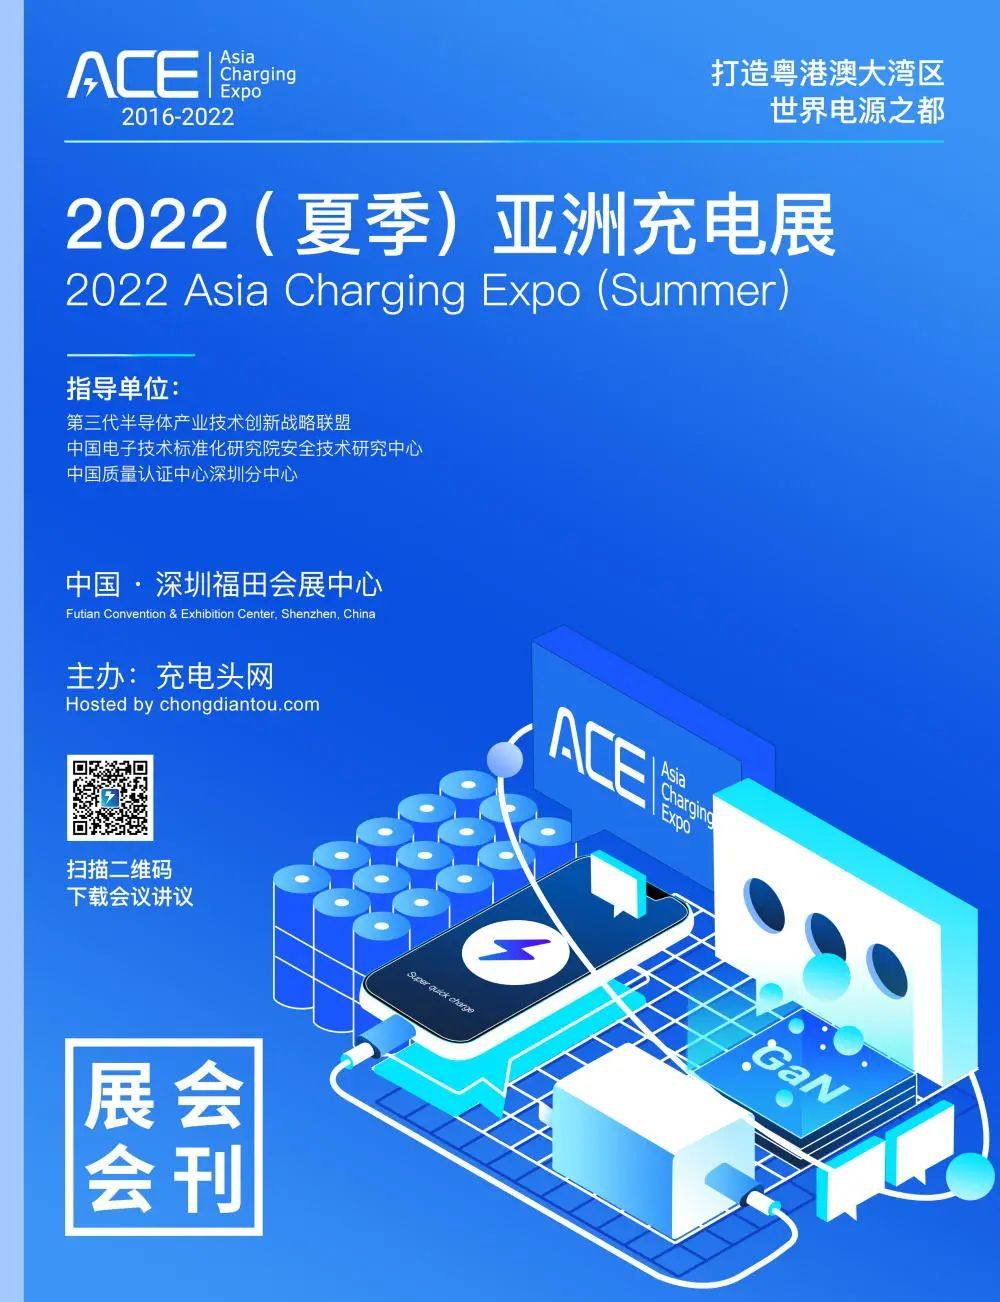 七家户外电源品牌商参加2022亚洲充电展-充电头网